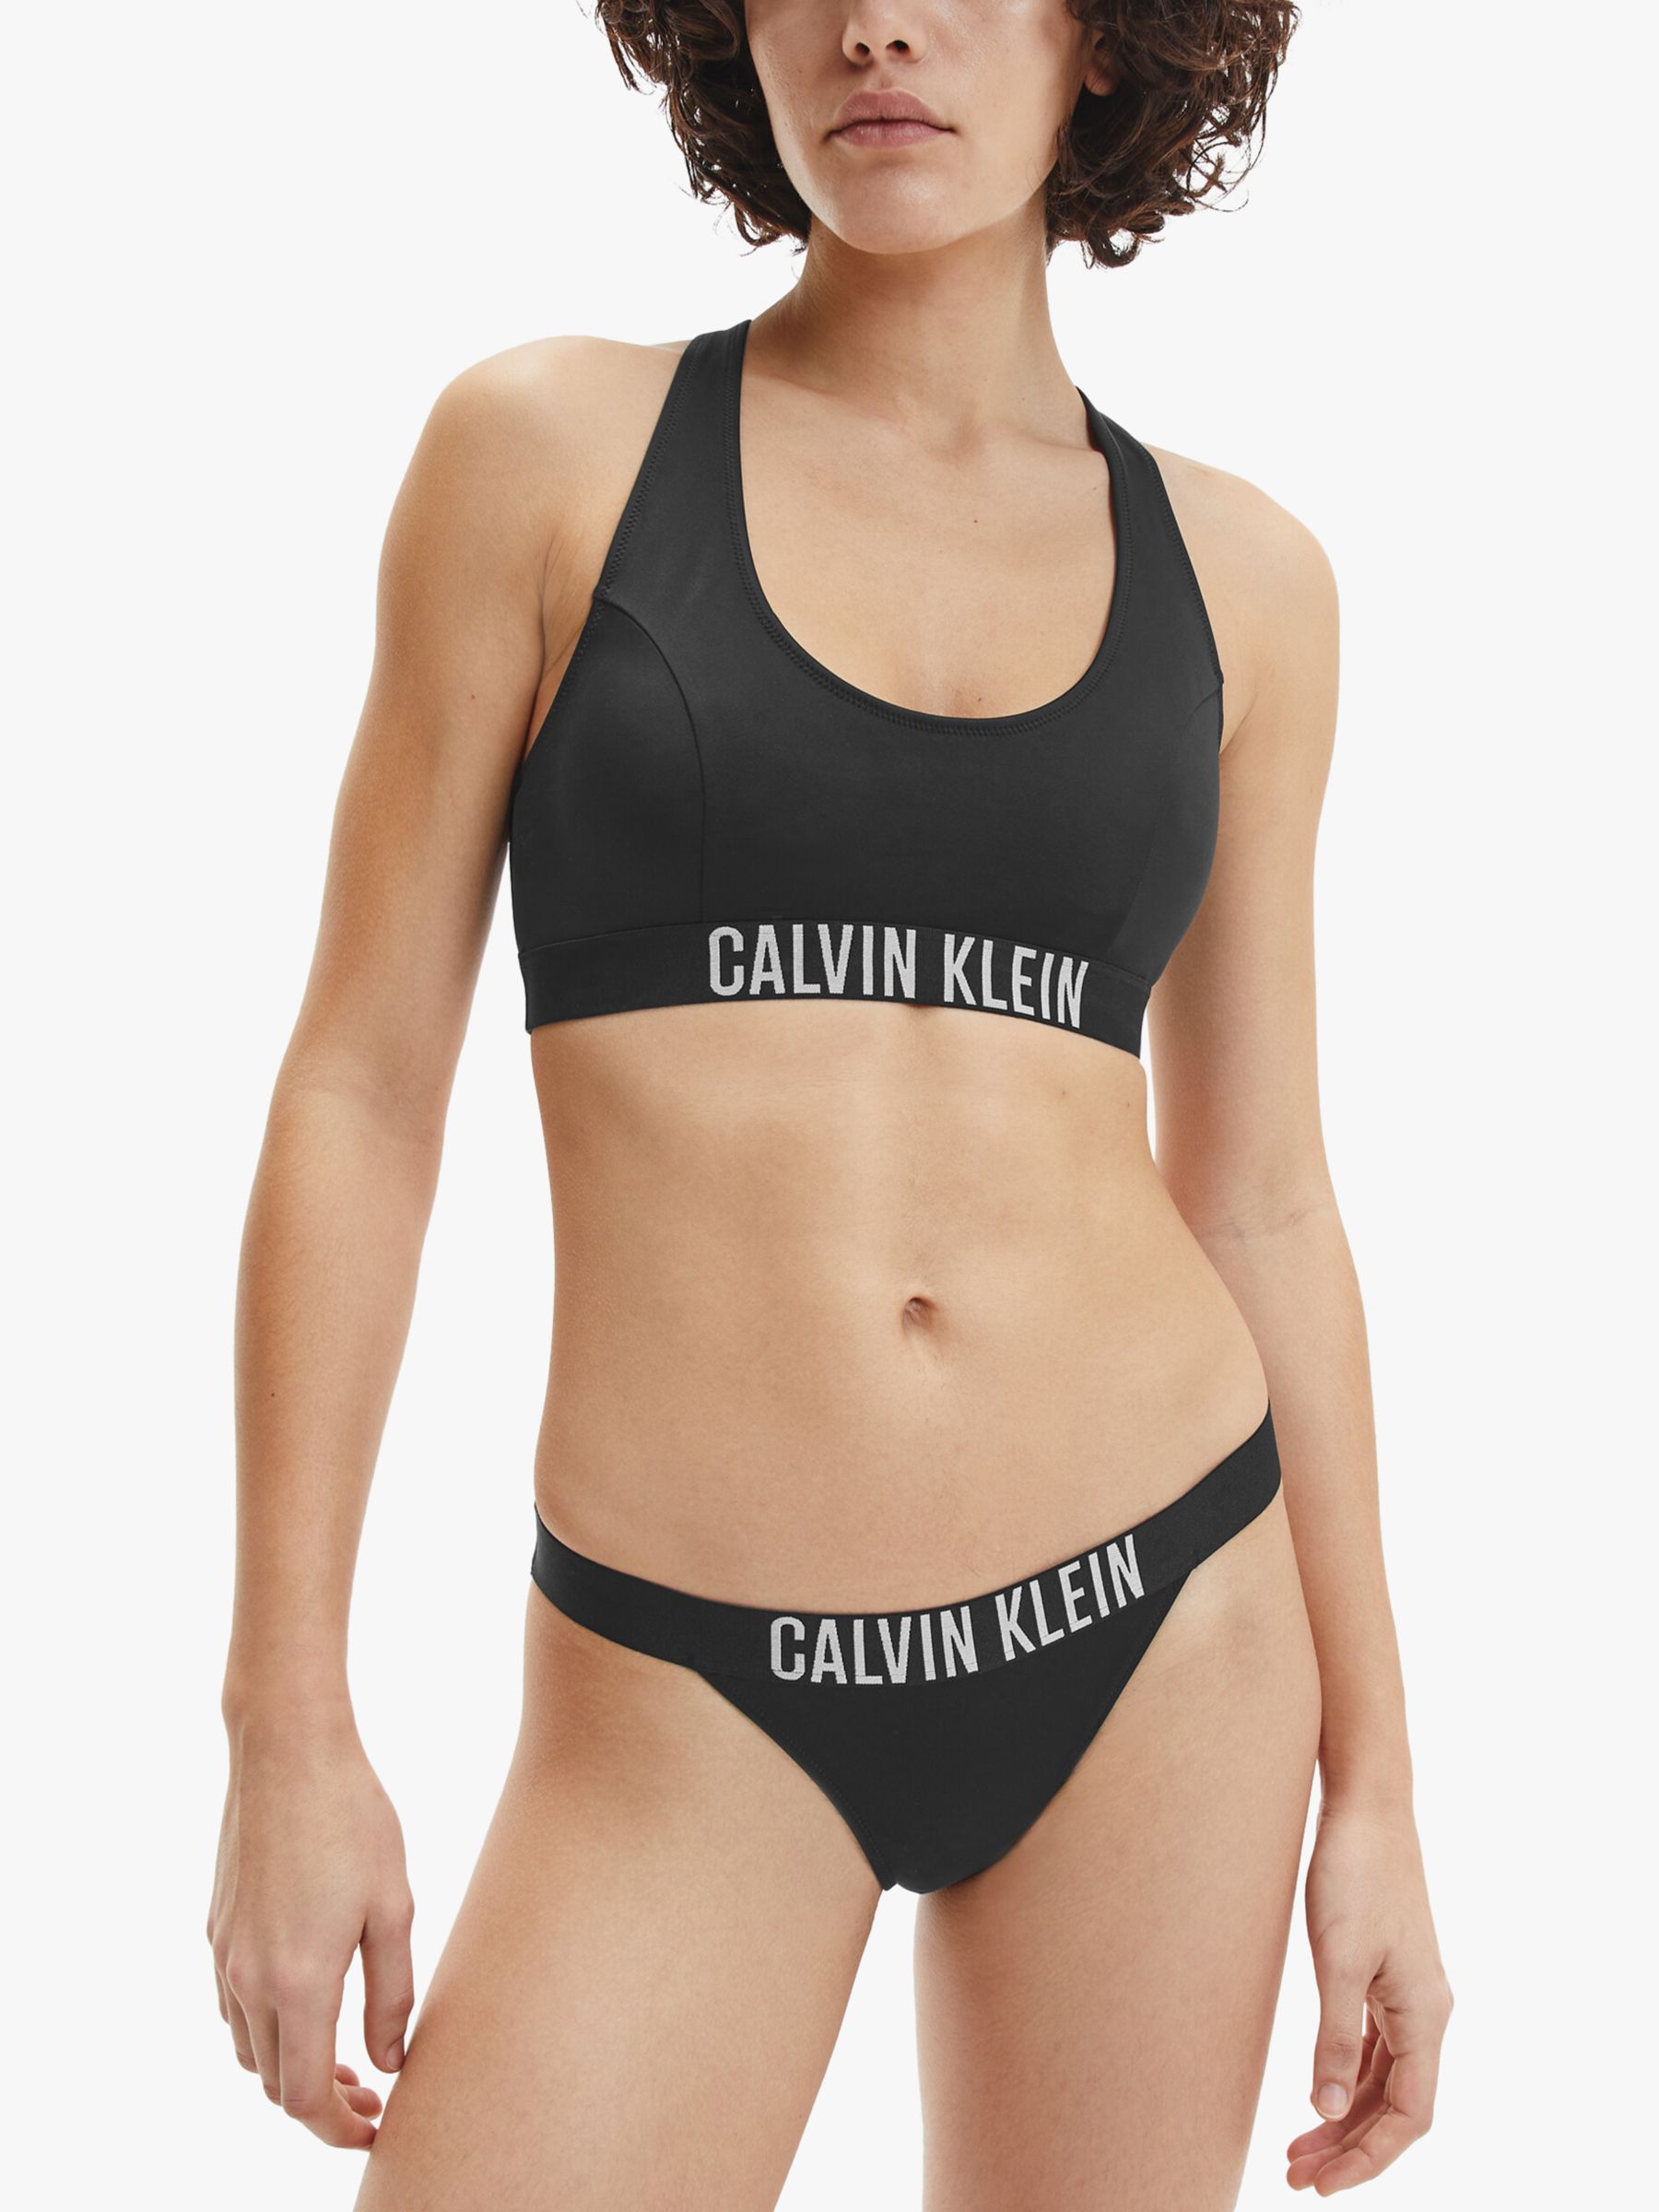 Calvin Klein Intense Power Brazilian Bikini Bottoms, Black